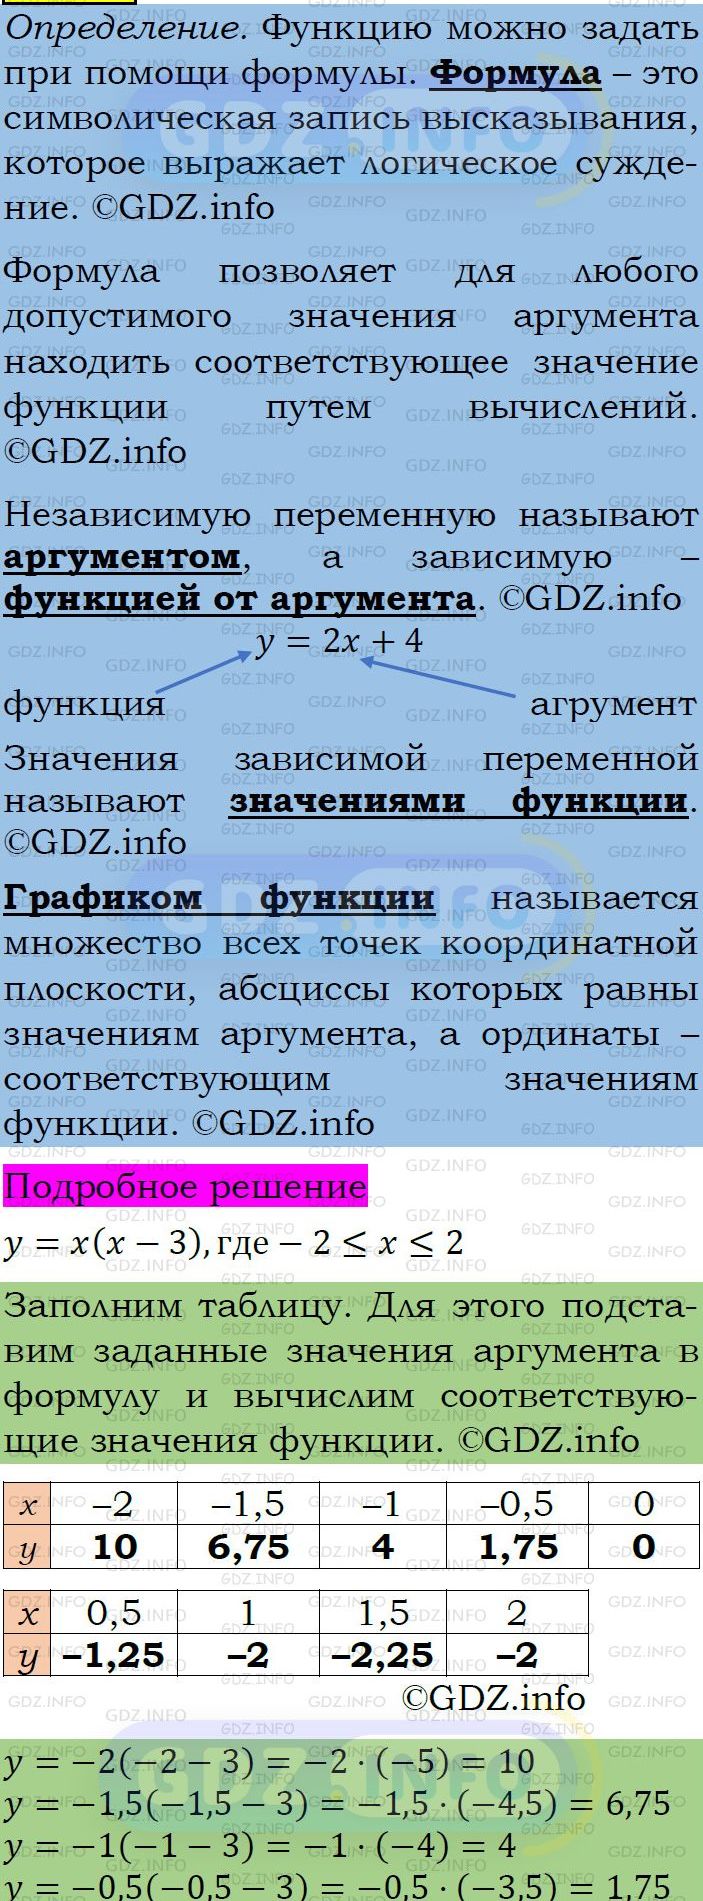 Фото подробного решения: Номер задания №283 из ГДЗ по Алгебре 7 класс: Макарычев Ю.Н.